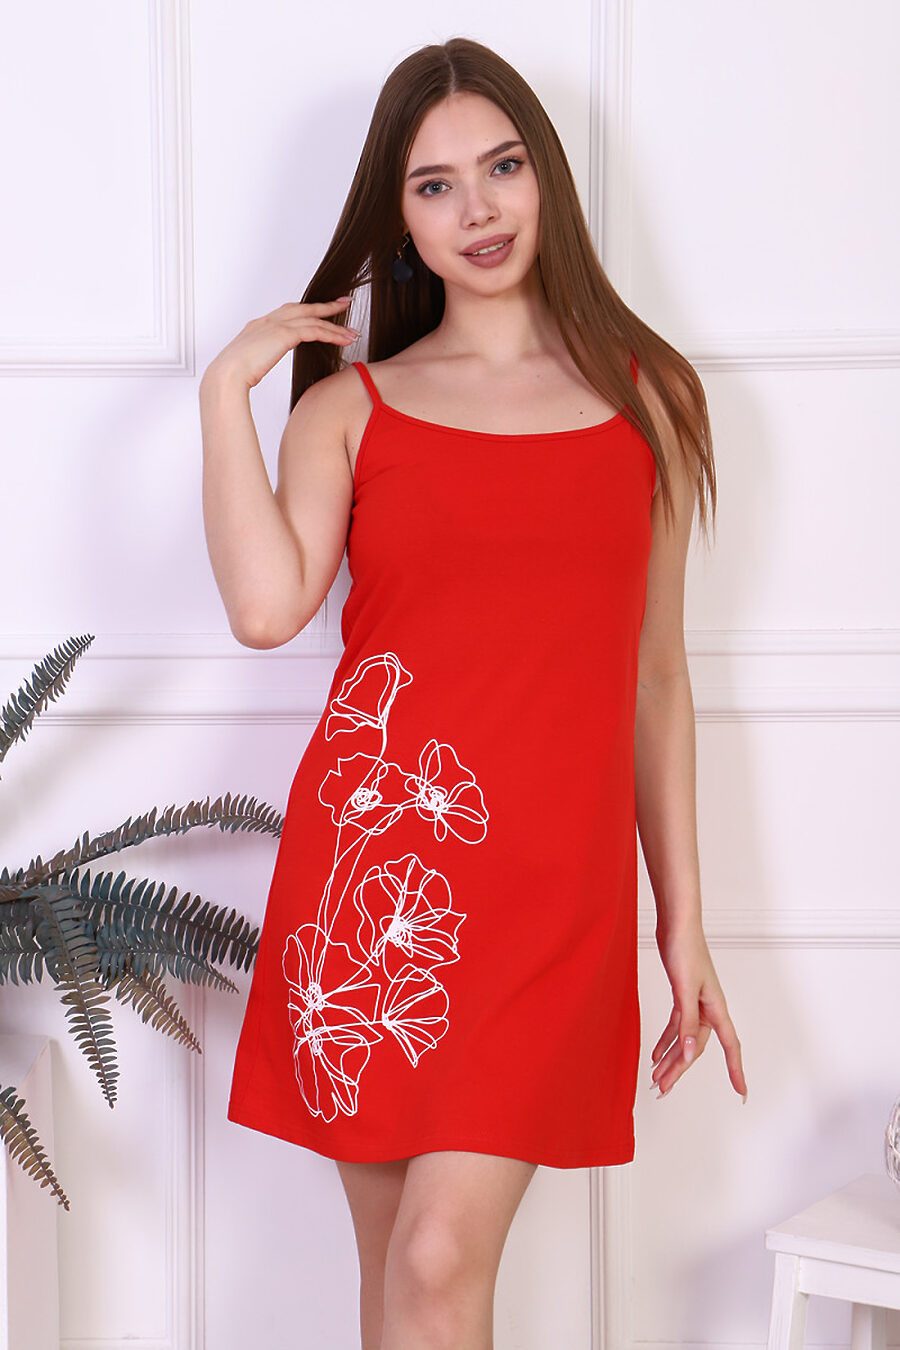 Сорочка  для женщин SOFIYA37 784882 купить оптом от производителя. Совместная покупка женской одежды в OptMoyo